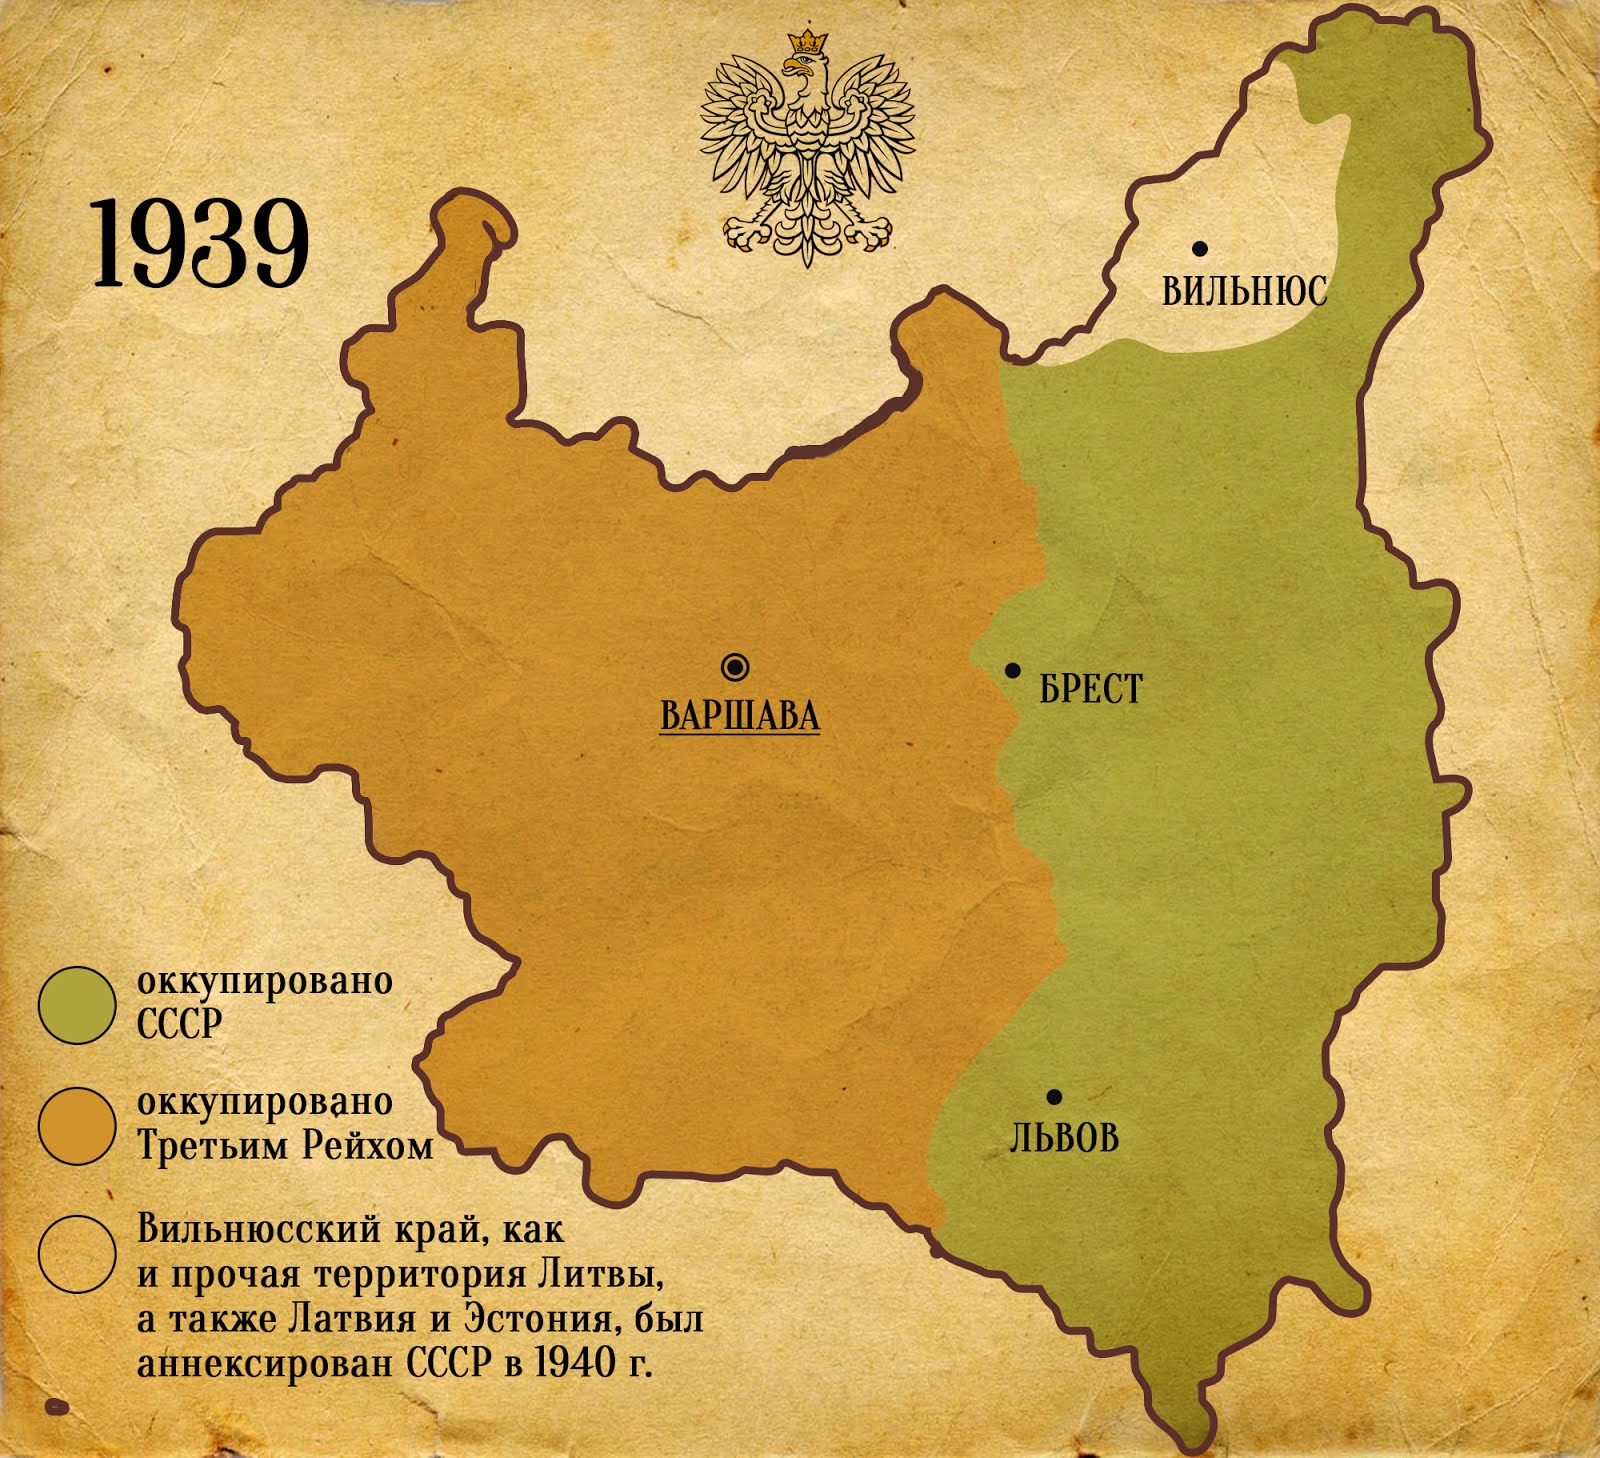 Польша 1939. Территория Польши 1939. Раздел Польши 1939 года карта. Территория Польши до 1939 года. Карта раздела Польши в 1939 году.